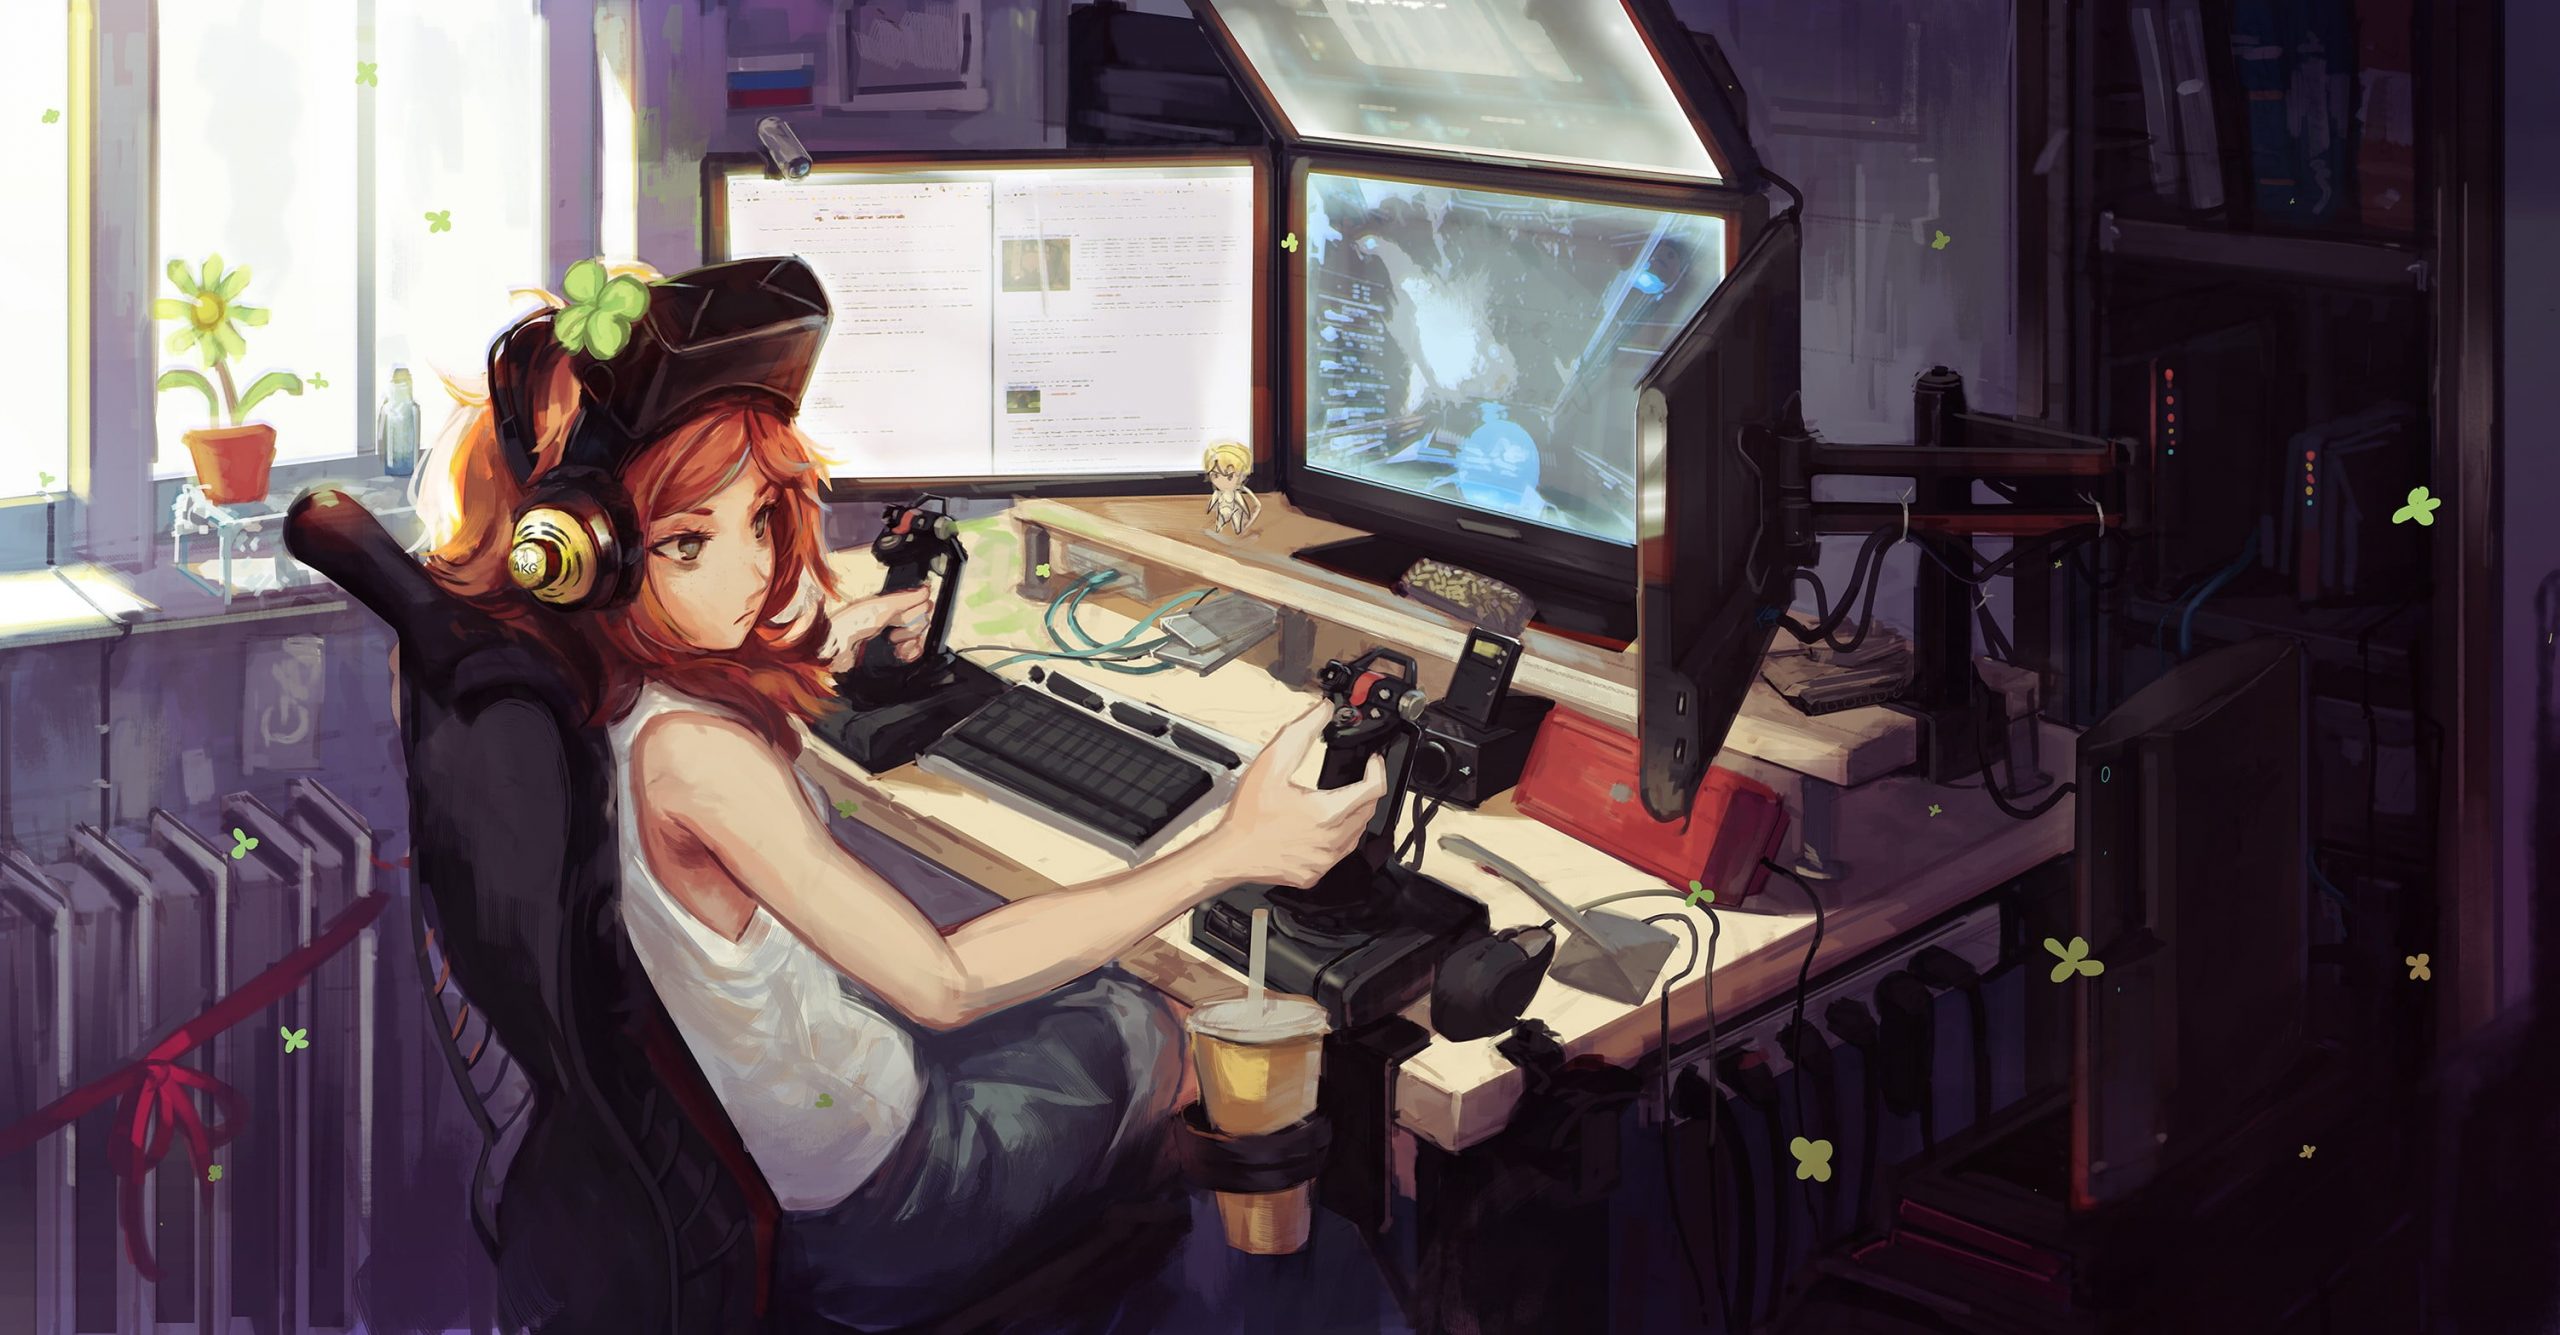 Anime girl computer gamer, girl wearing white tank top illustration